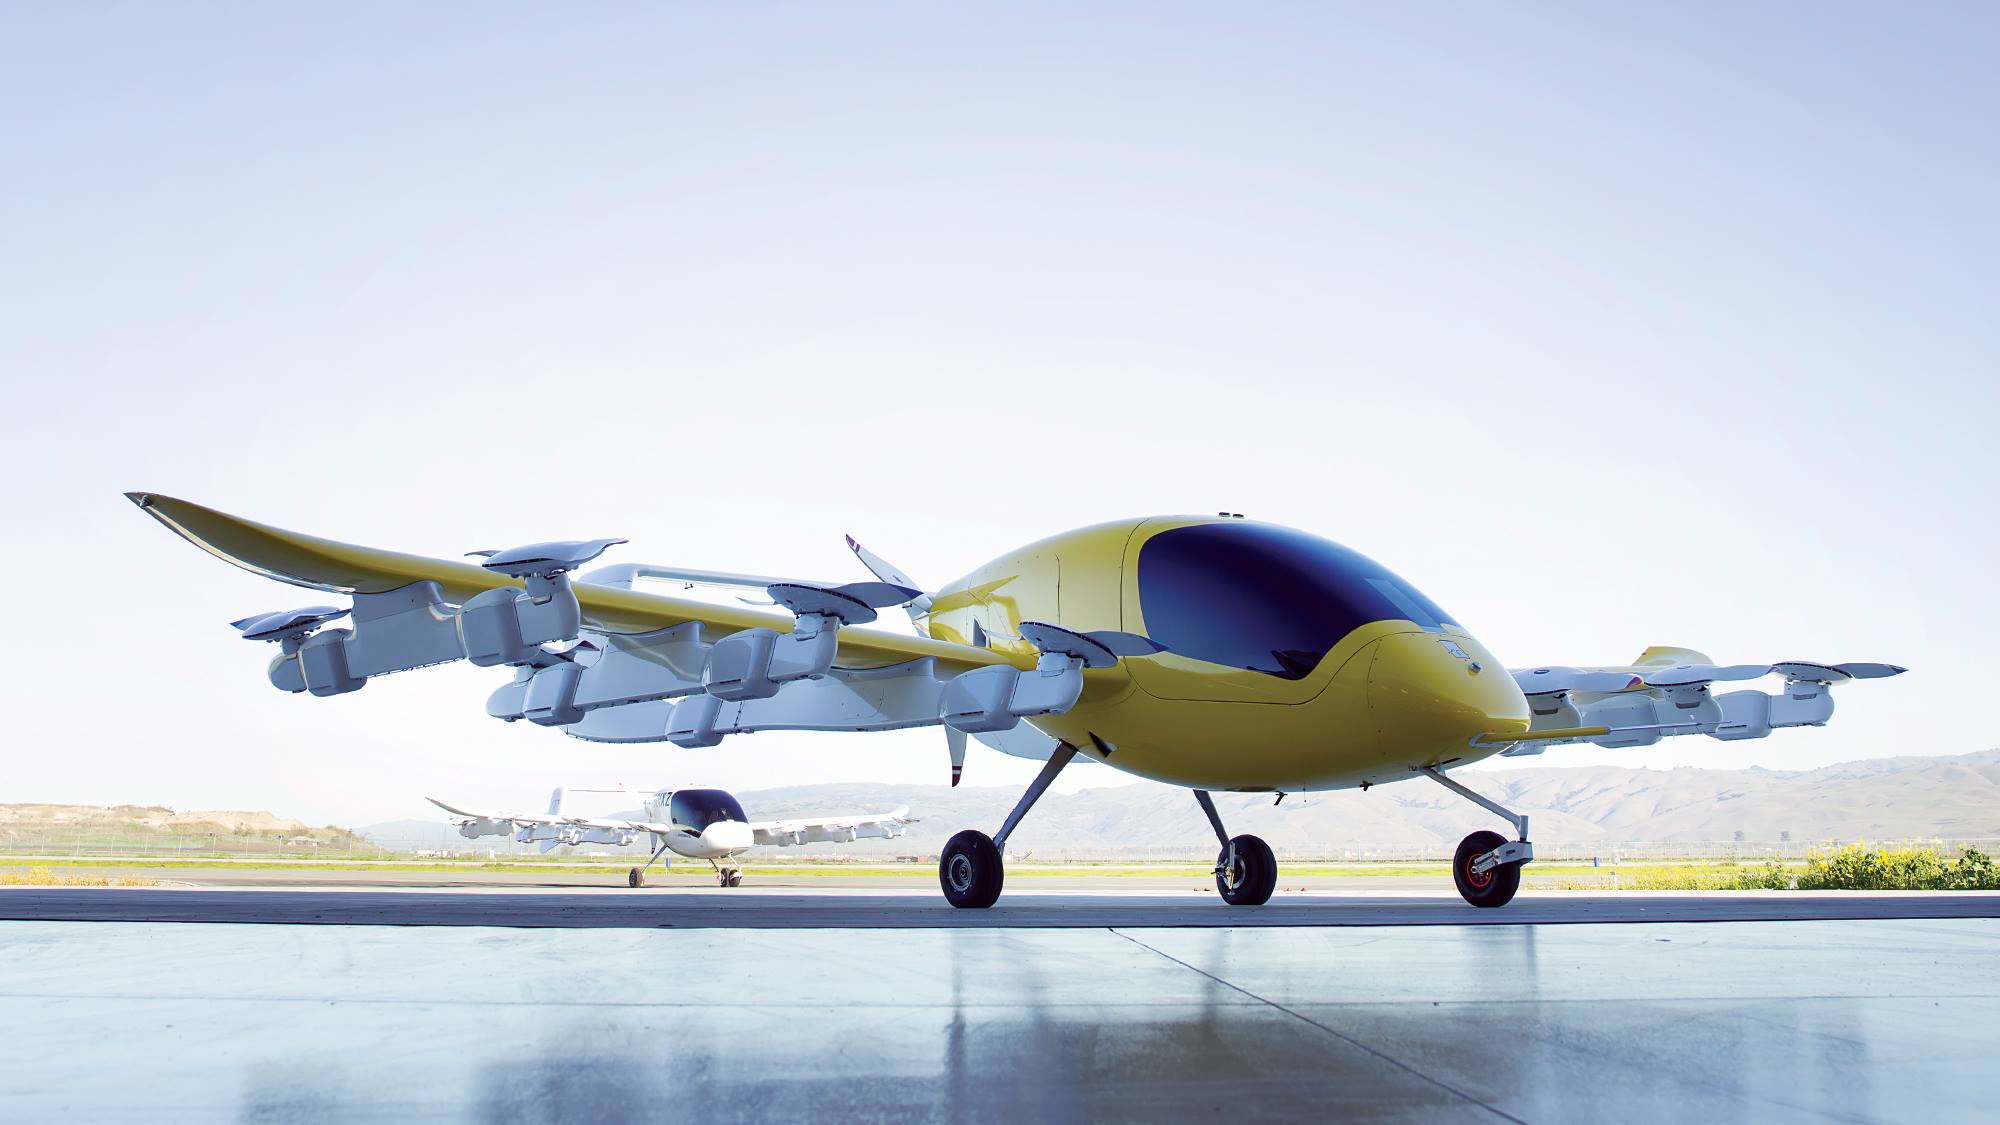 Wisk, autonomous eVTOL aircraft